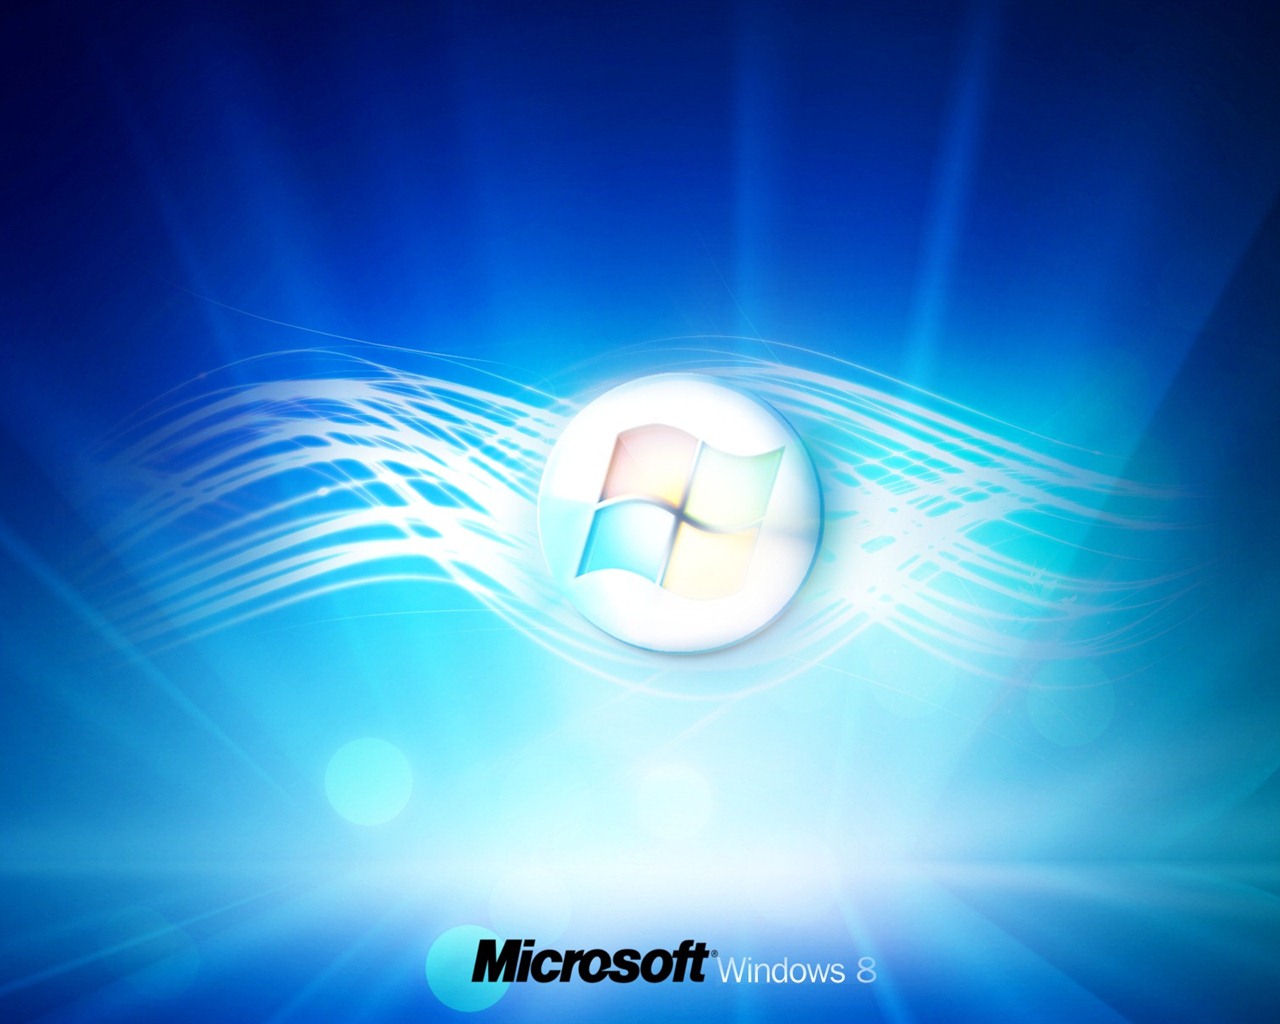 Windows 8 theme wallpaper (1) #3 - 1280x1024